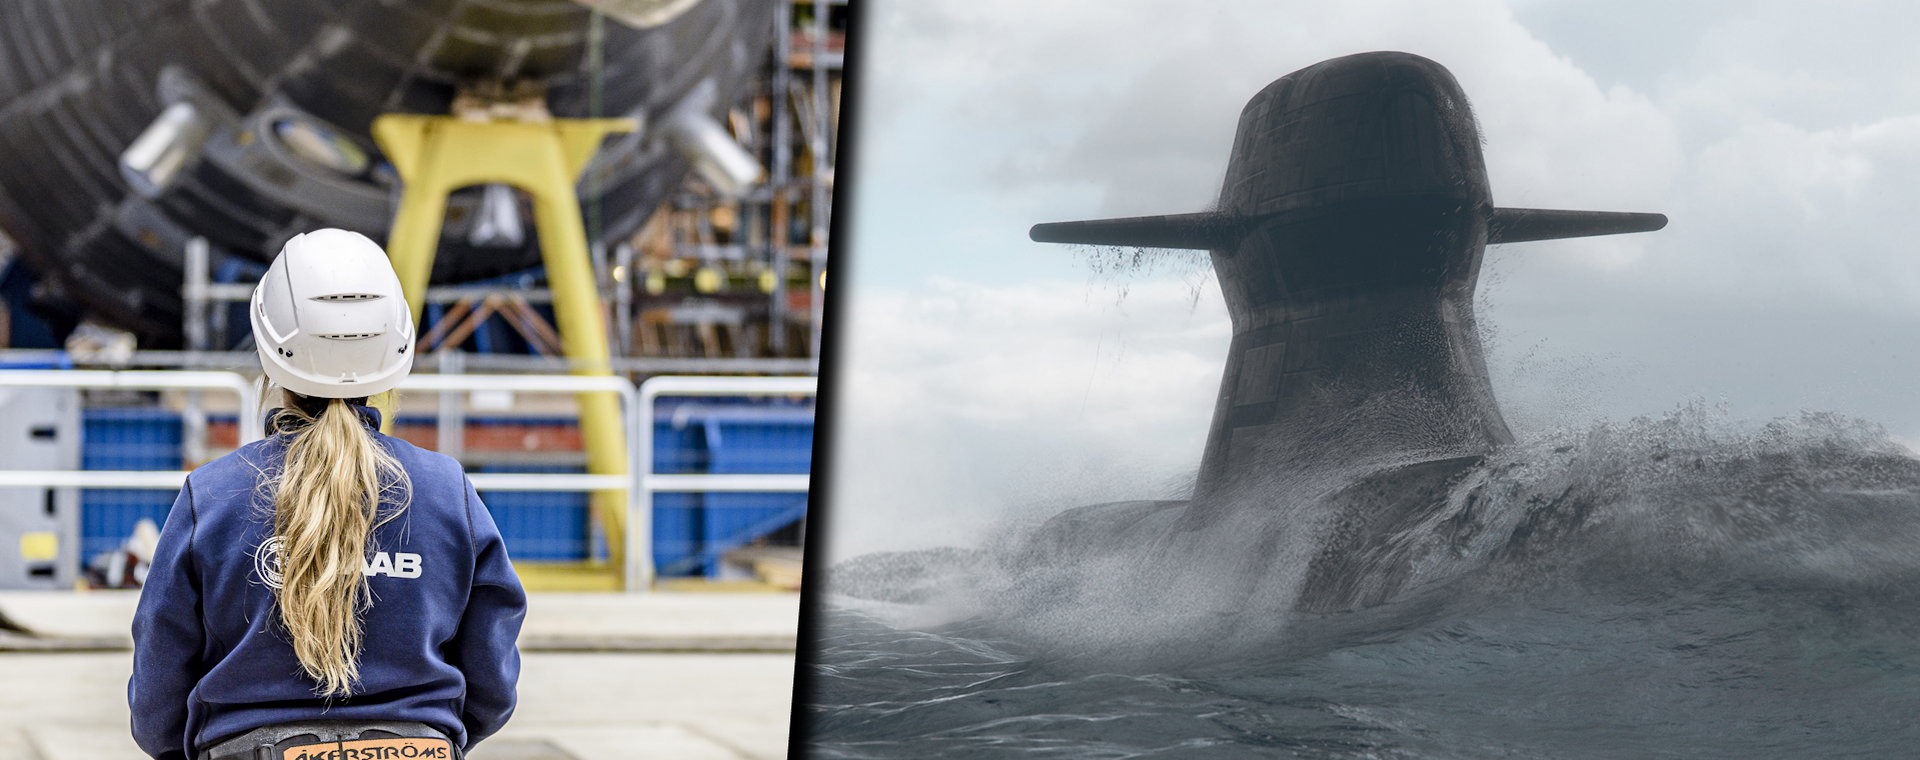 Od lewej: pracowniczka stoczni koncernu Saab i wizualizacja przyszłej generacji okrętów podwodnych